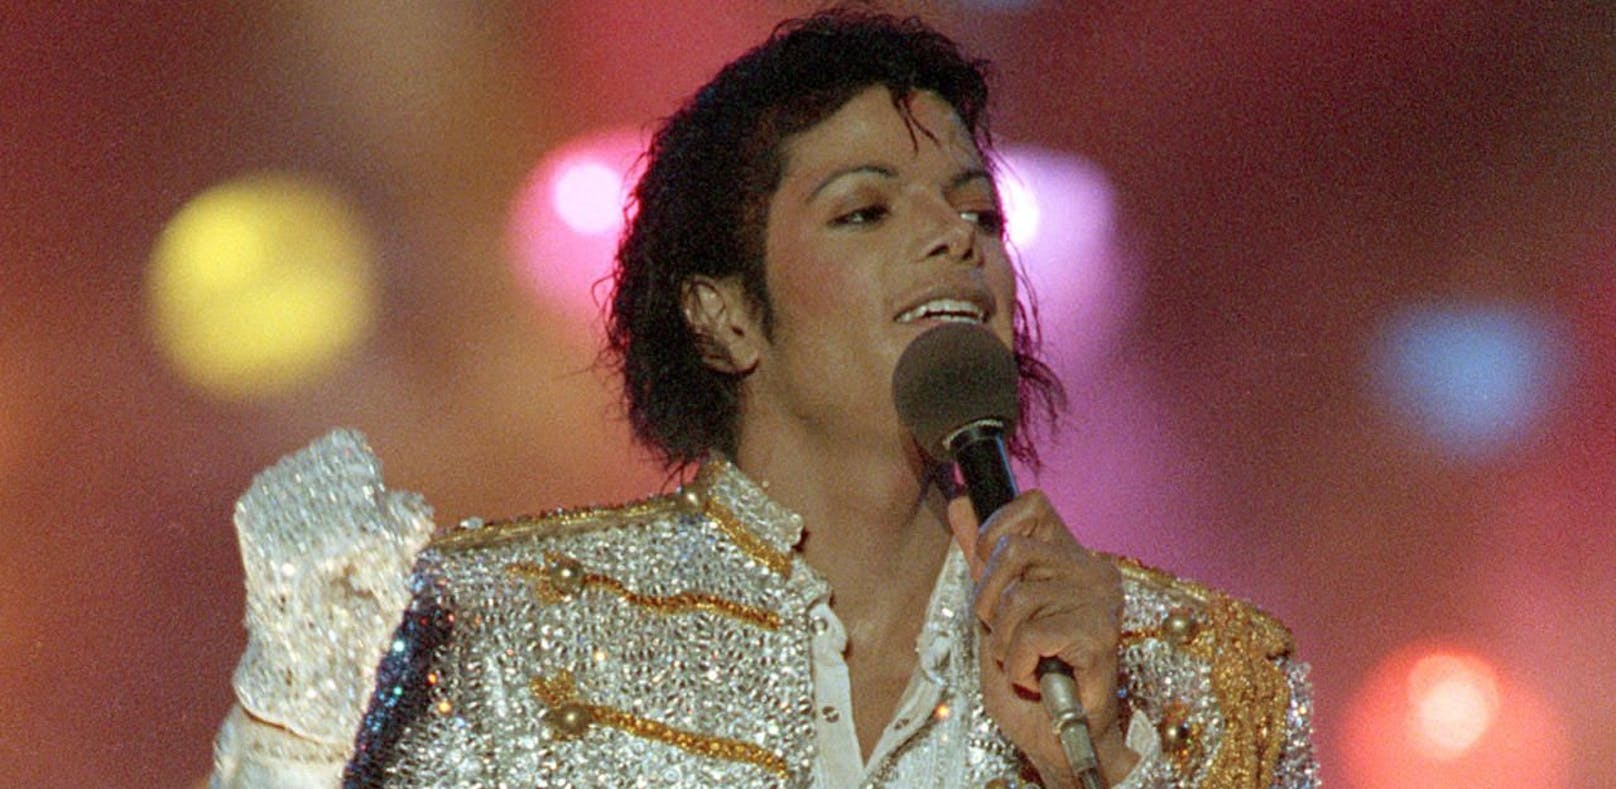 Der silberne Handschuh: Ein unverzichtbares Accessoire bei vielen von Michael Jacksons Live-Auftritten